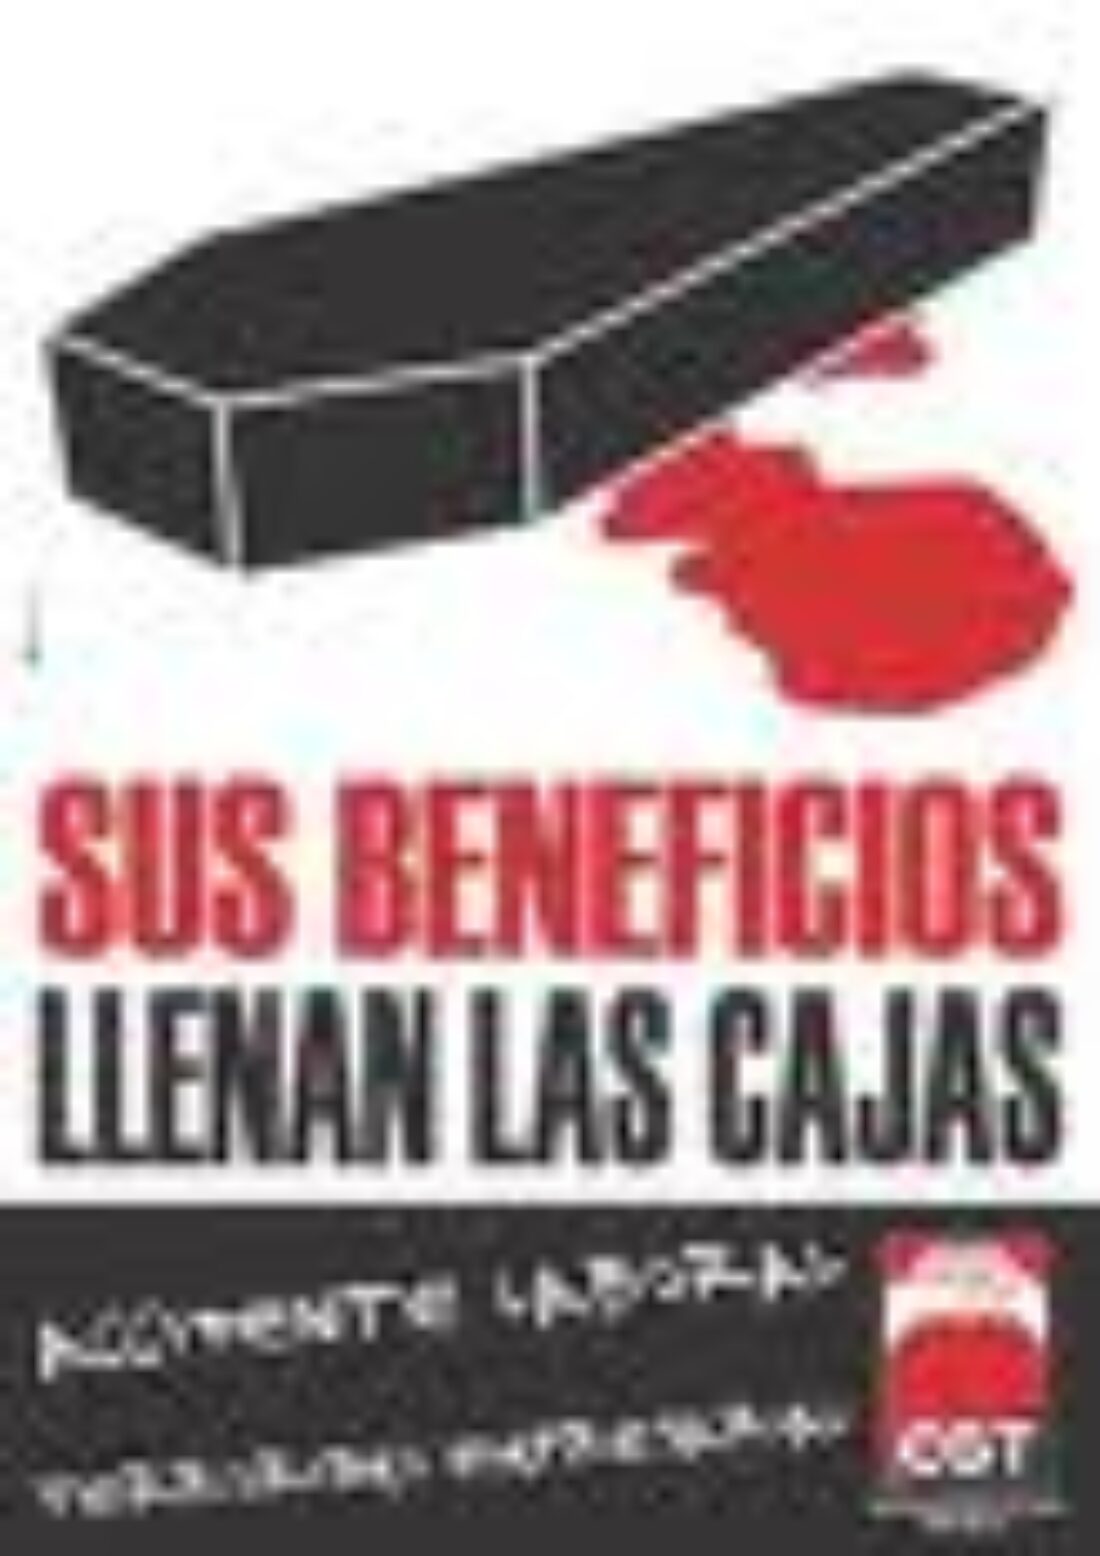 10 mayo, Valladolid : Concentración en protesta por la muerte de un obrero